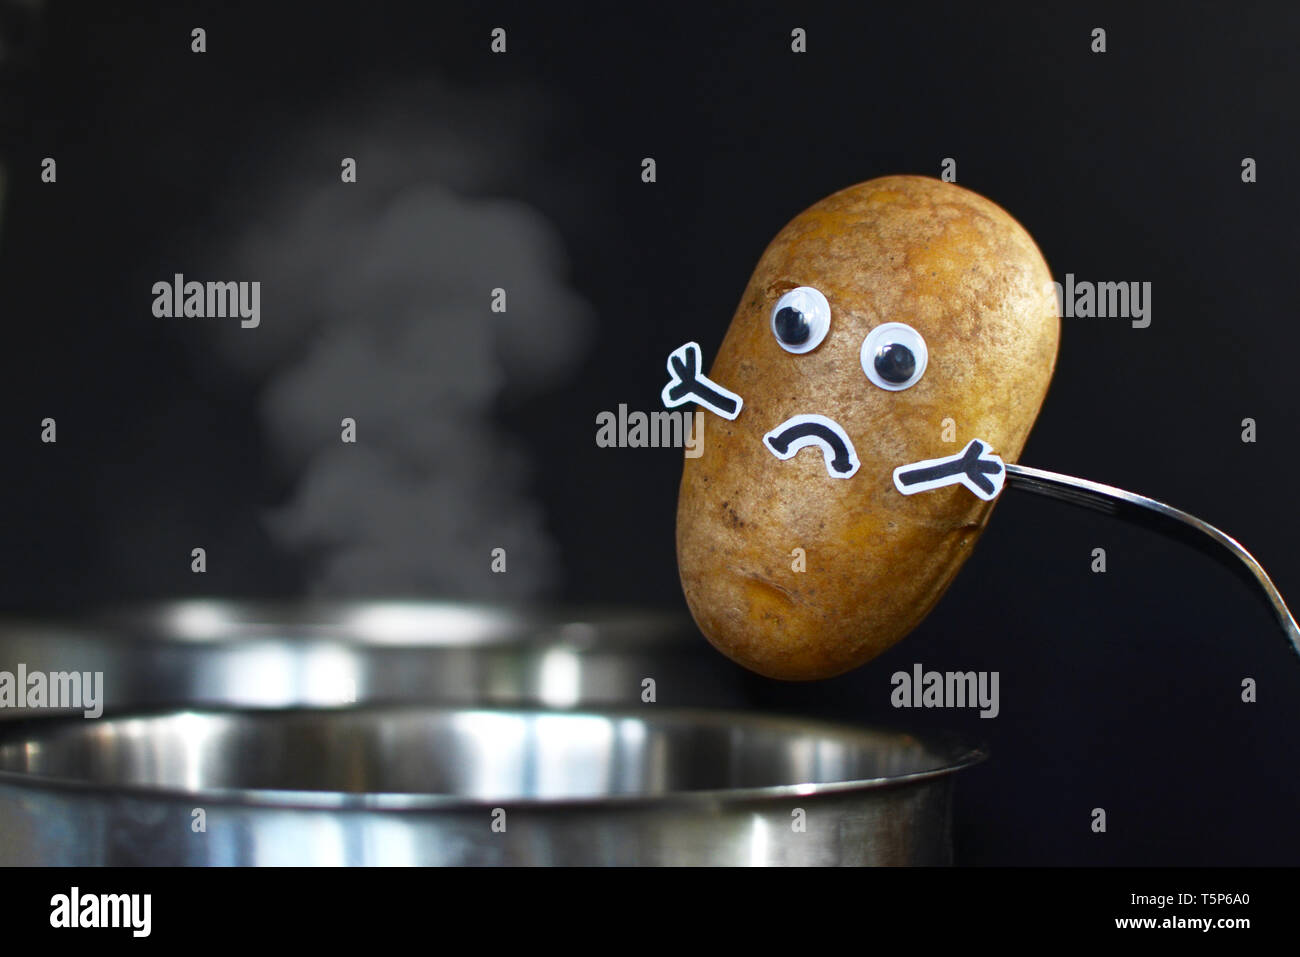 Kartoffel mit traurigem Gesicht und goggle Augen in einem dampfenden Kochtopf auf dunklen schwarzen Hintergrund gesetzt werden Stockfoto